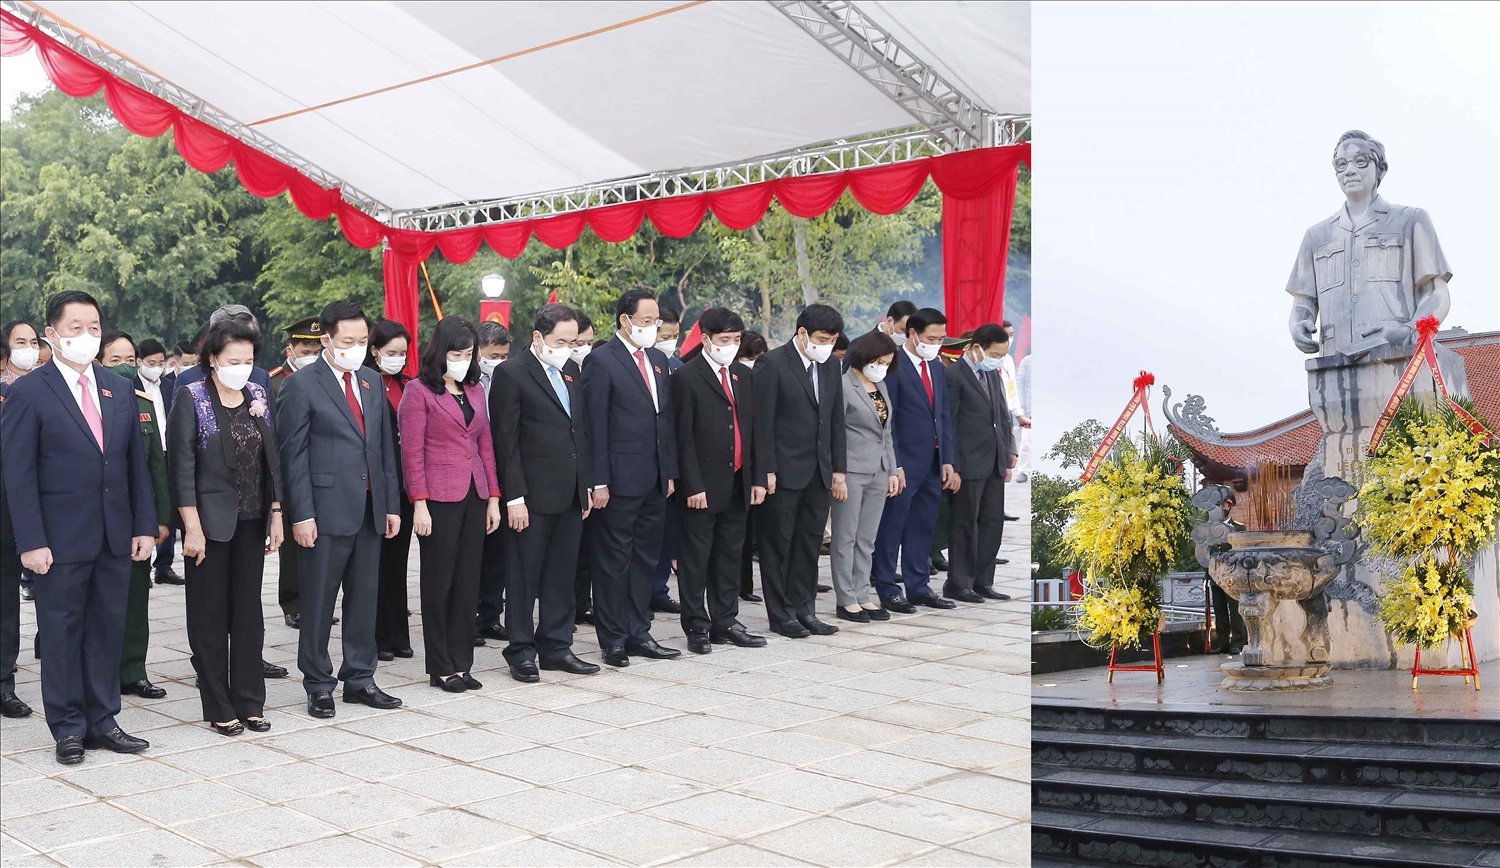 Chủ tịch Quốc hội Vương Đình Huệ cùng các đồng chí lãnh đạo Đảng, Nhà nước tưởng niệm đồng chí Lê Quang Đạo